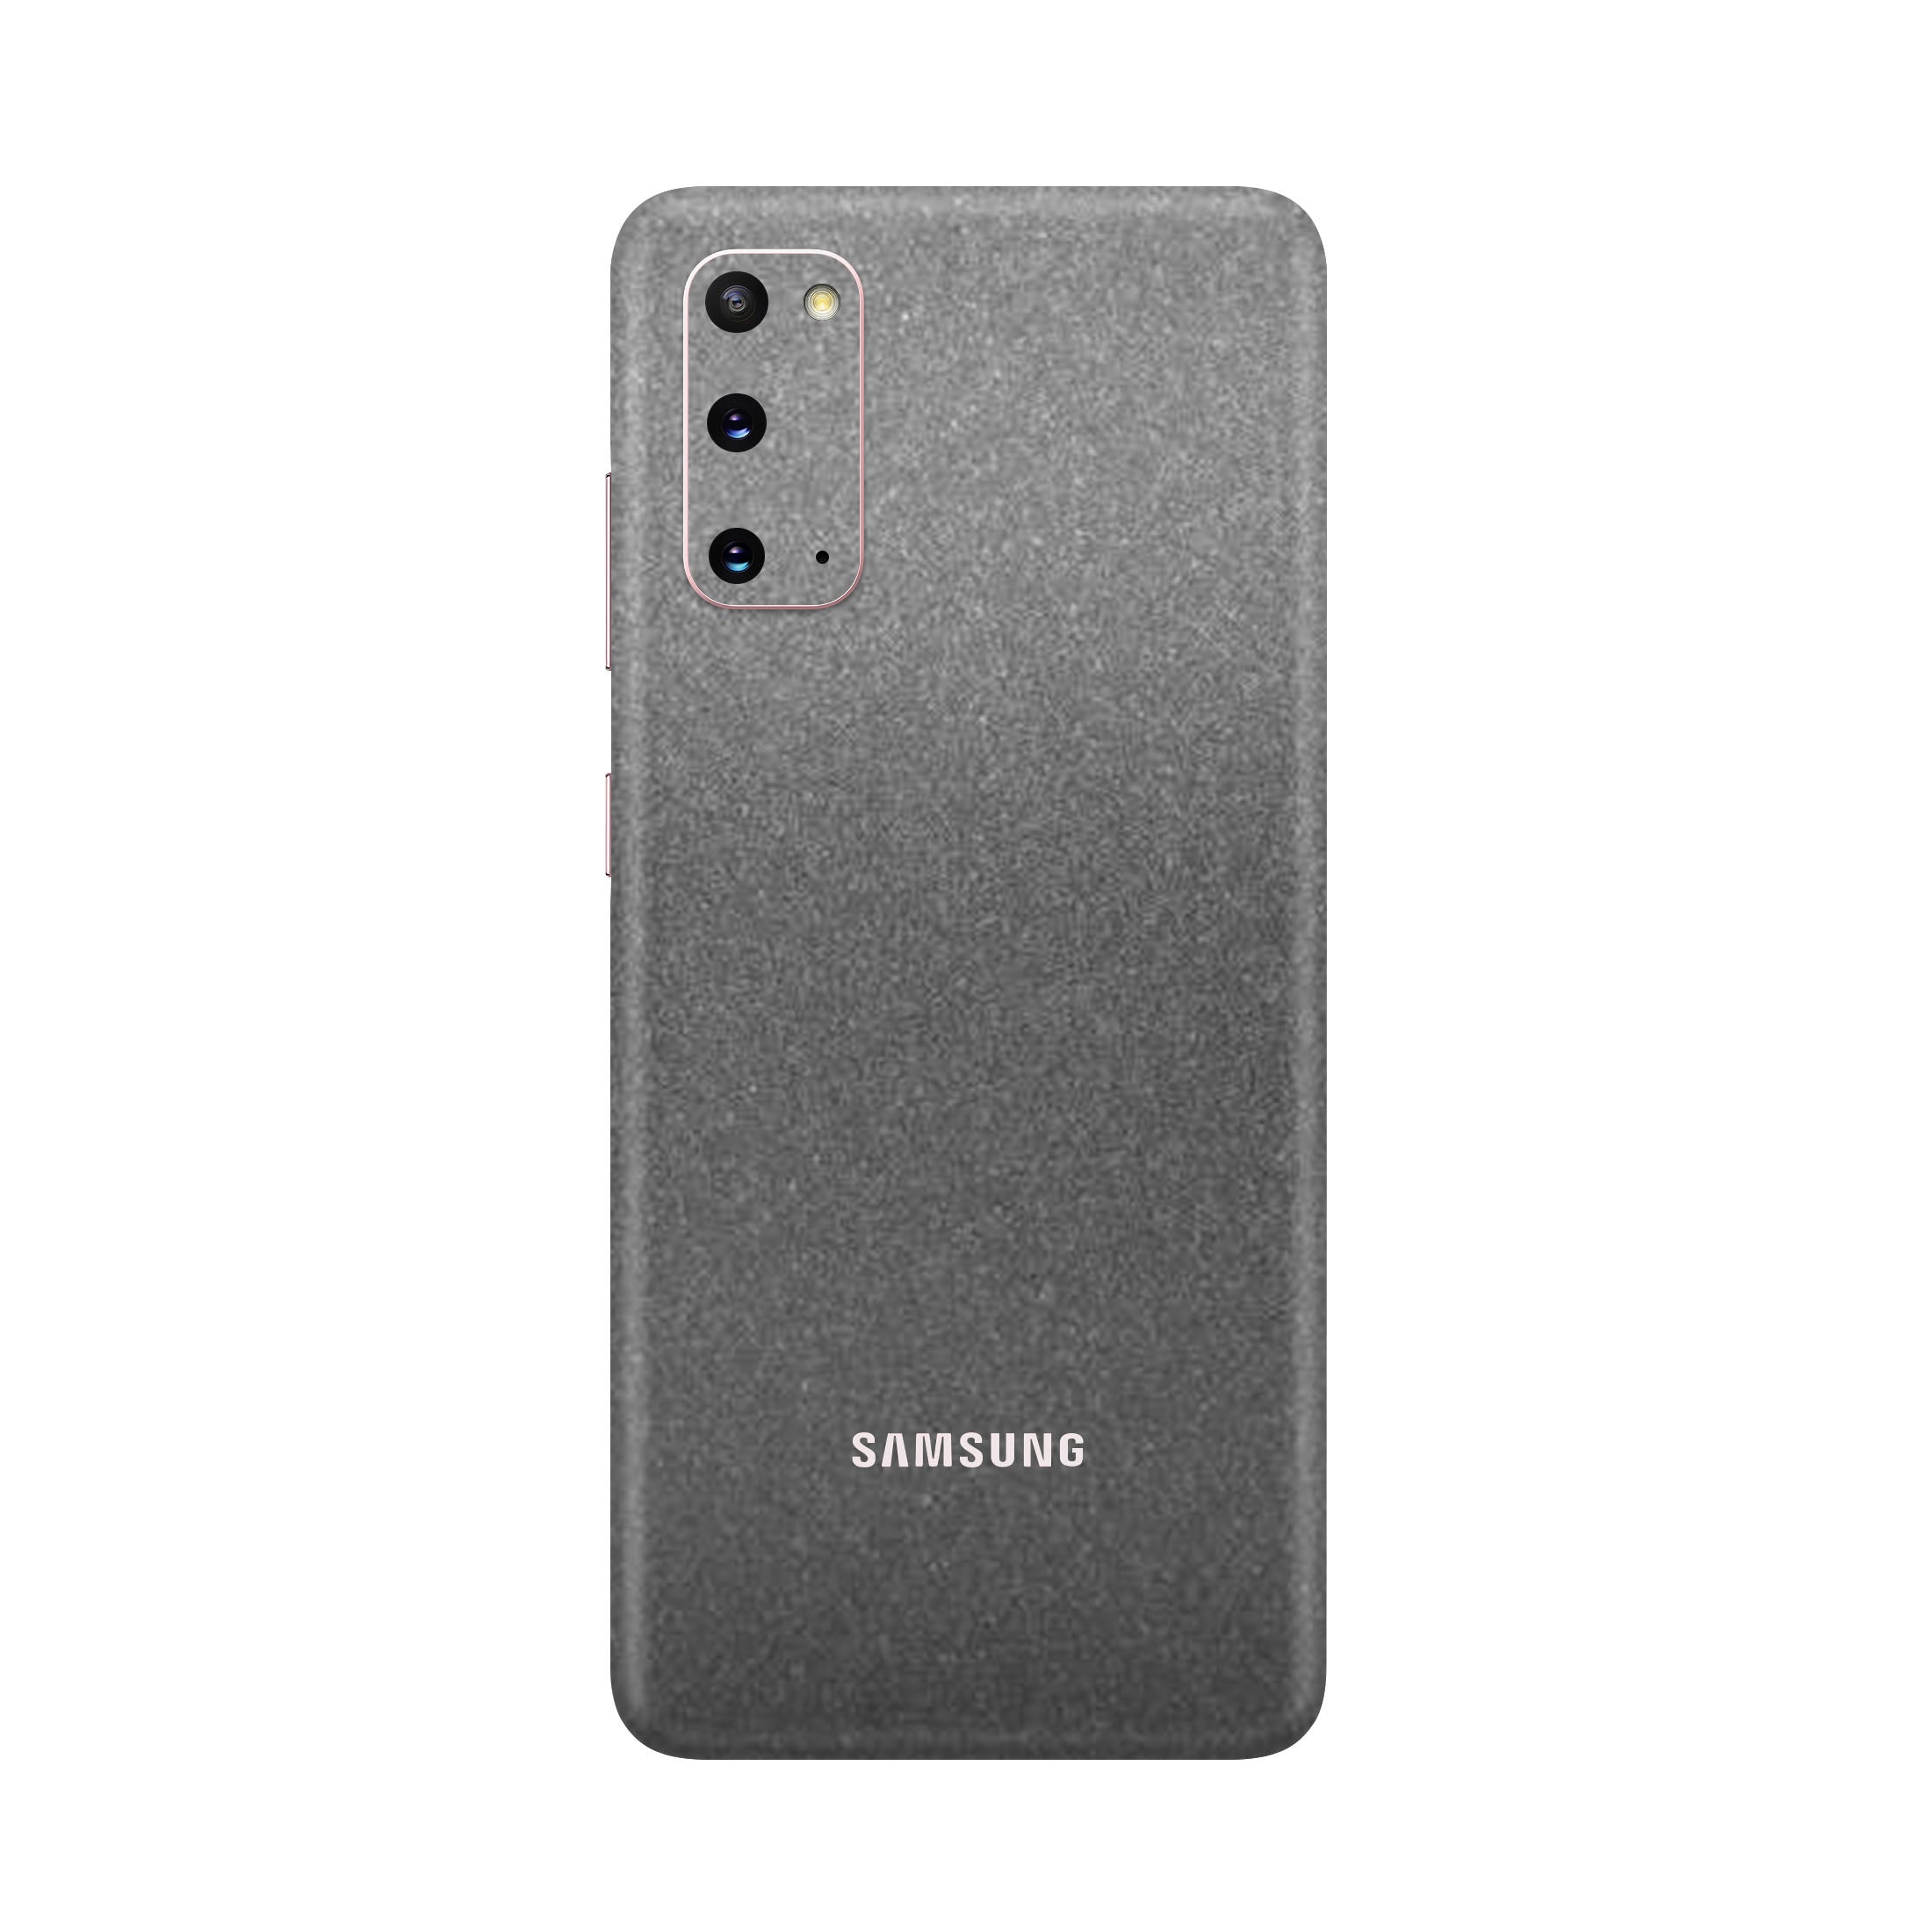 Satin Dark Gray Skin for Samsung S20 Plus